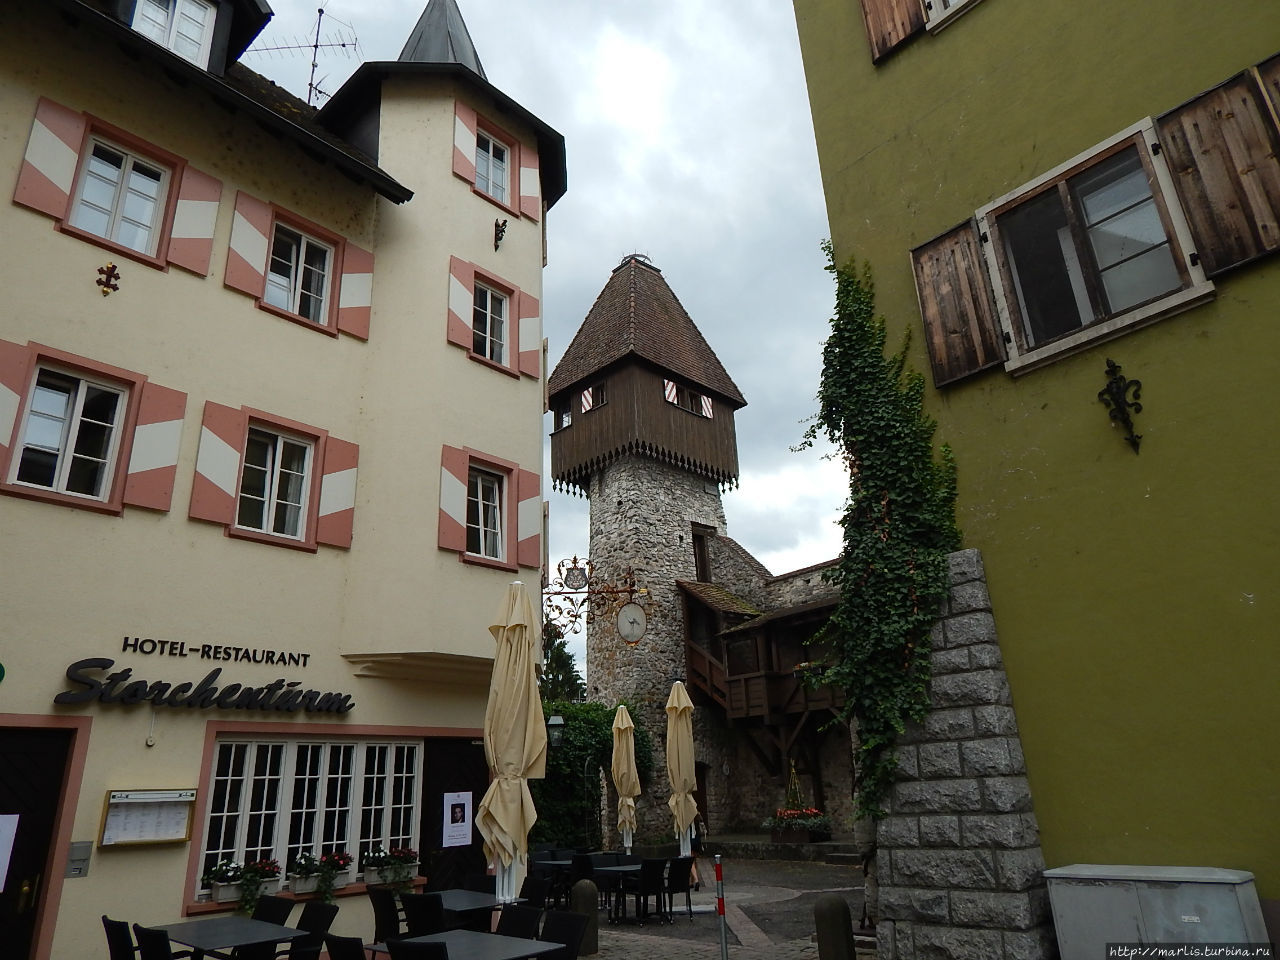 Остатки средневековой городской стены. Журавлиная башня Вальдсхут-Тинген, Германия